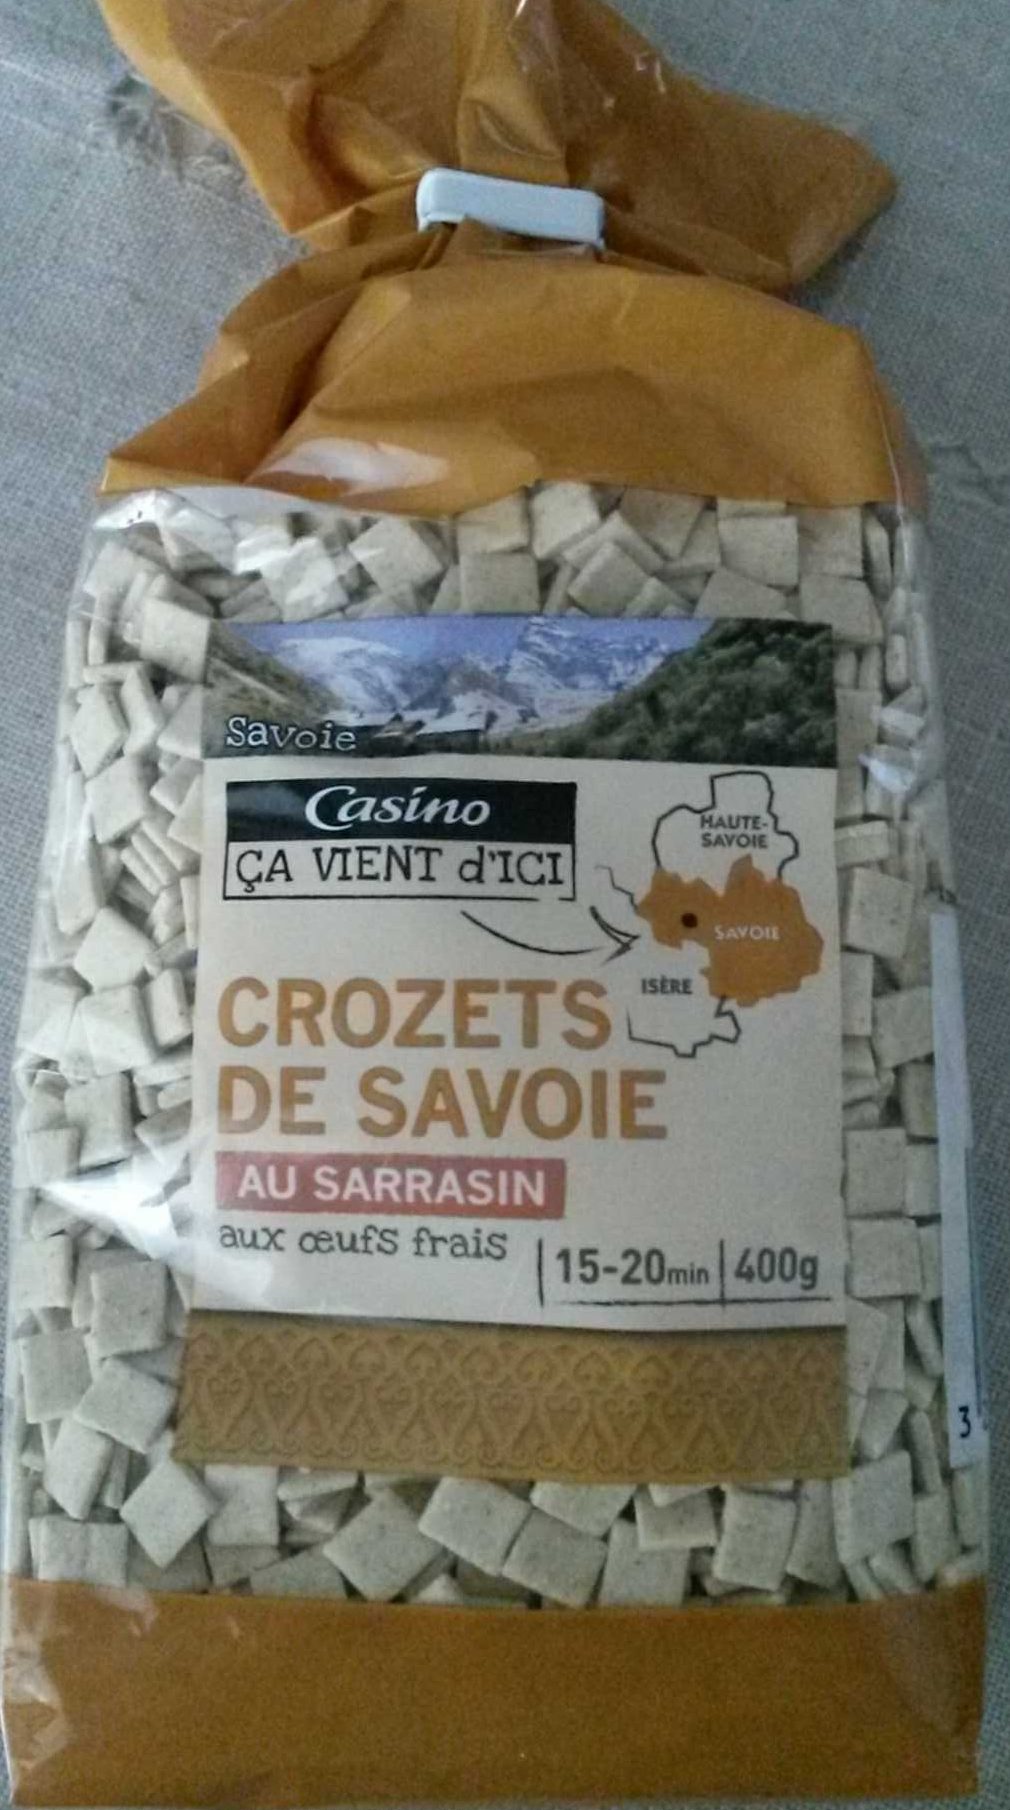 CROZETS de Savoie au sarrasin, aux œufs frais - Product - fr